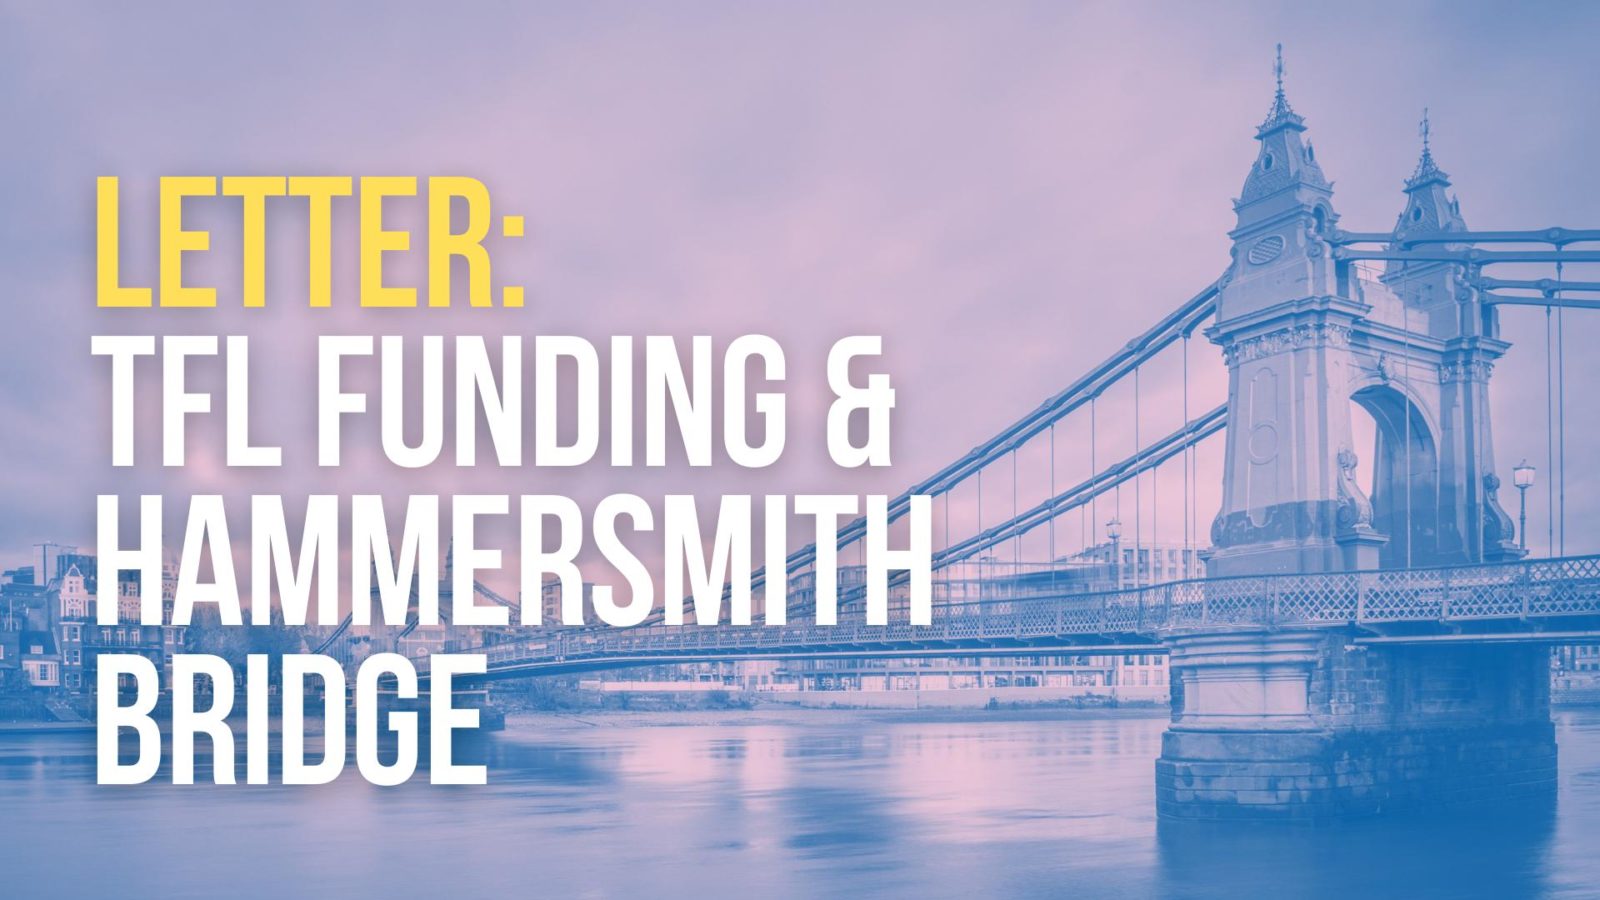 Tfl Funding & Hammersmith Bridge